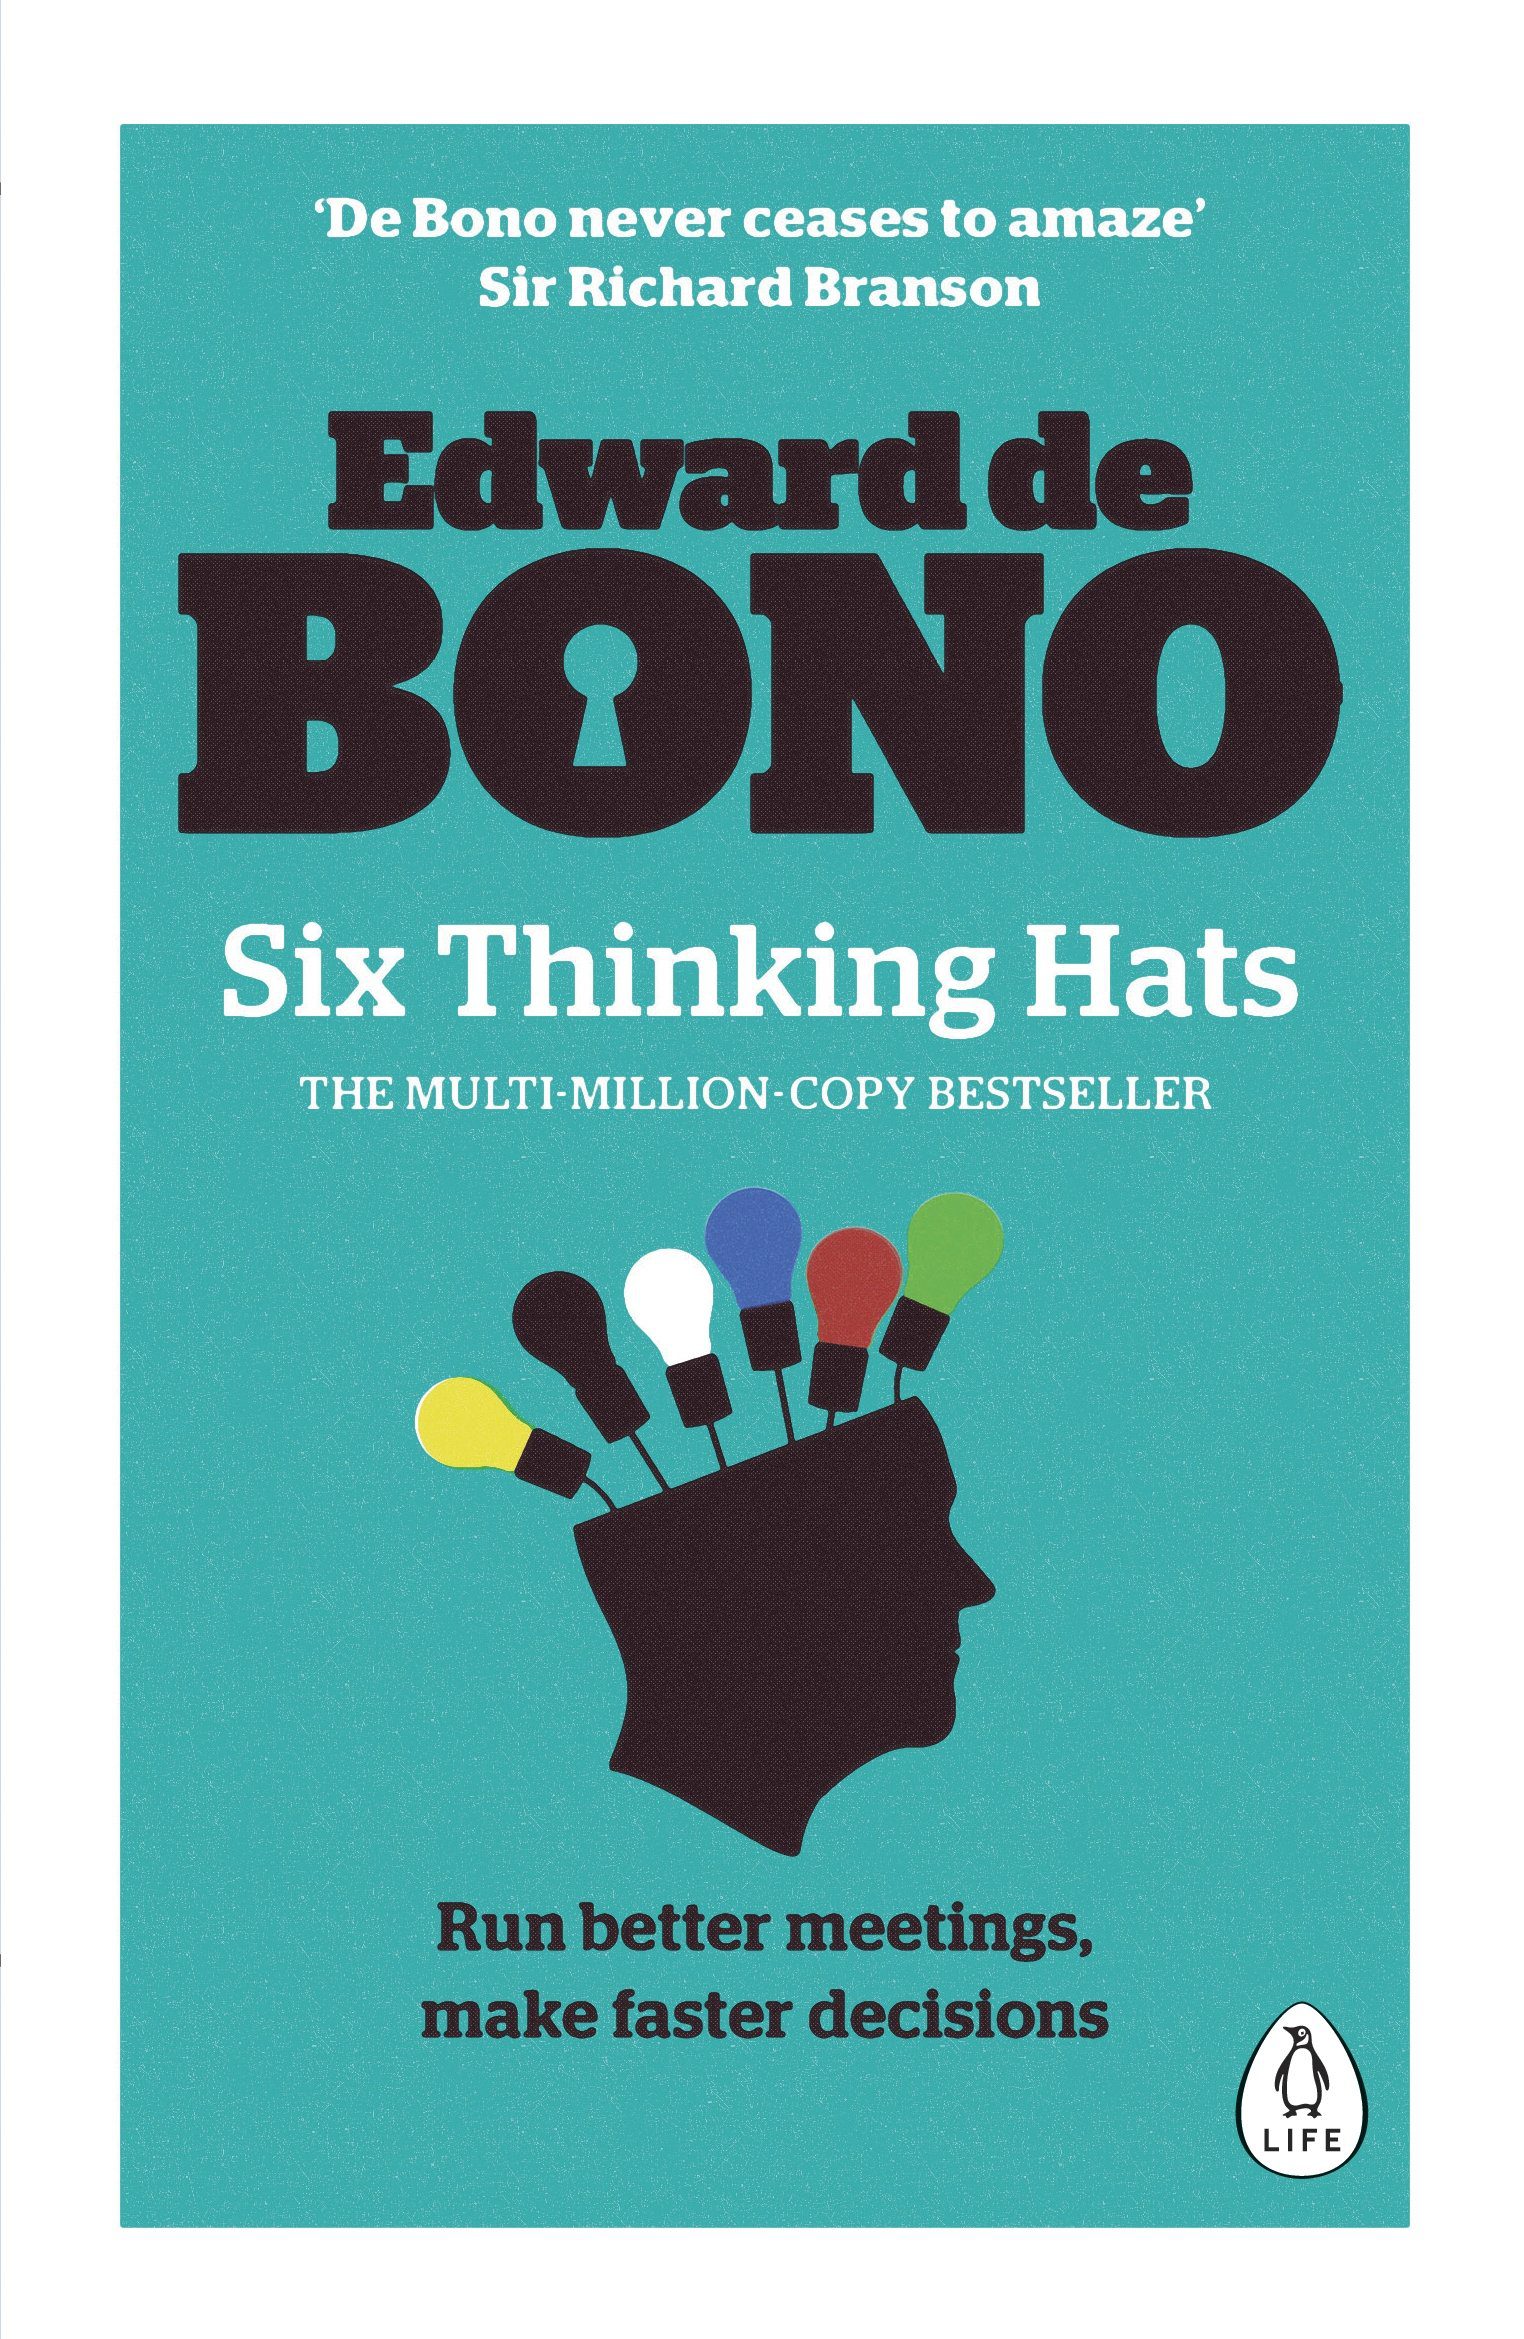 thinking hats by edward de bono